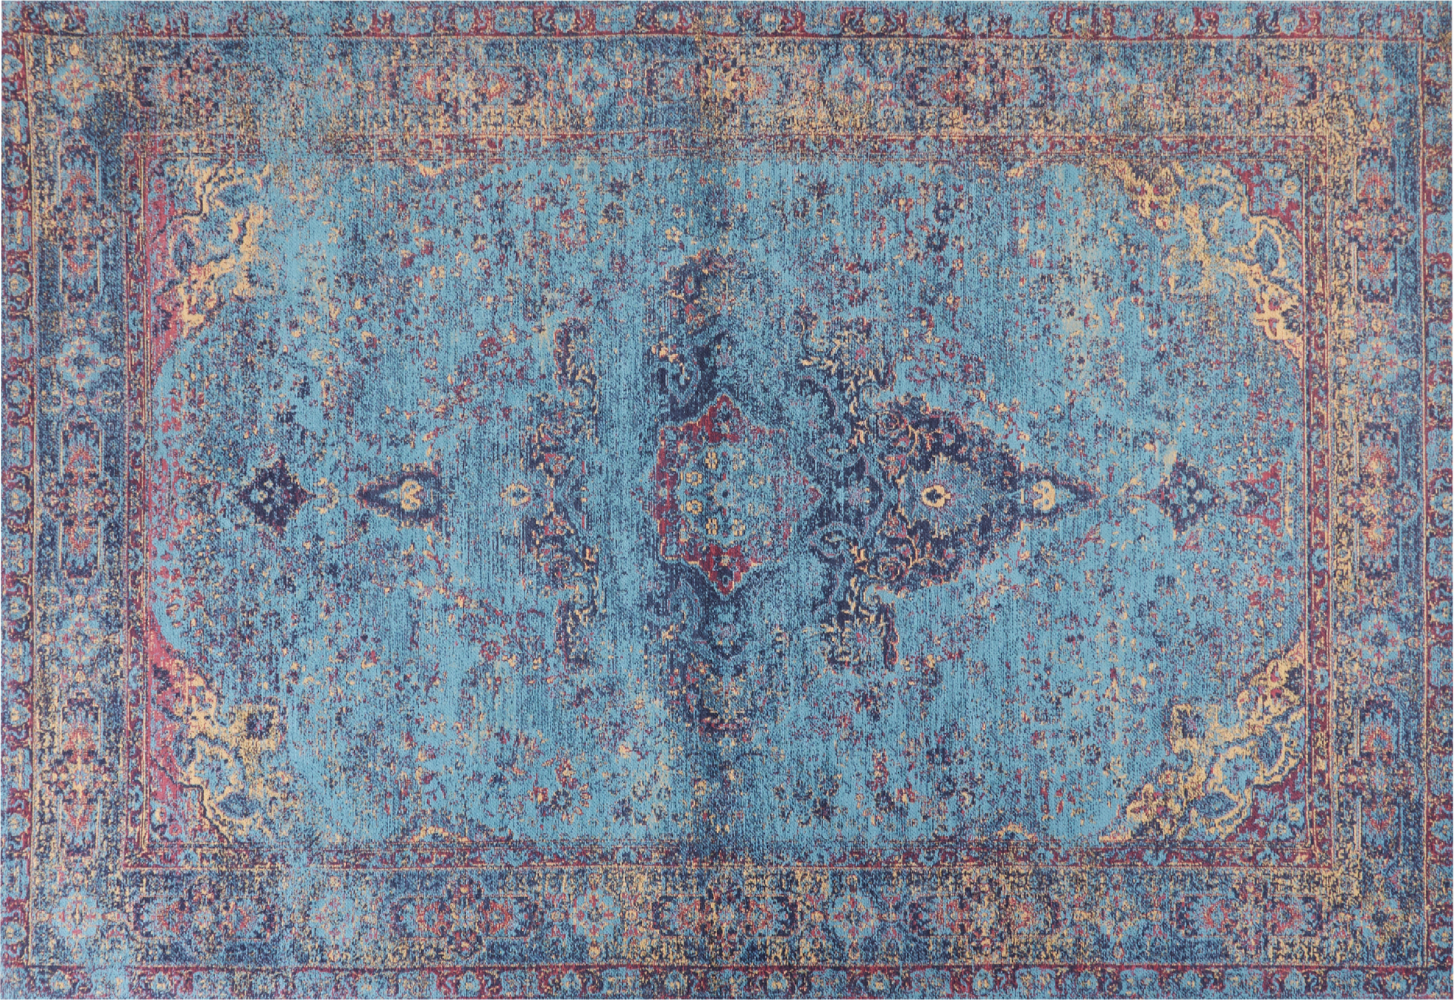 Teppich Baumwolle blau 160 x 230 cm orientalisches Muster Kurzflor KANSU Bild 1